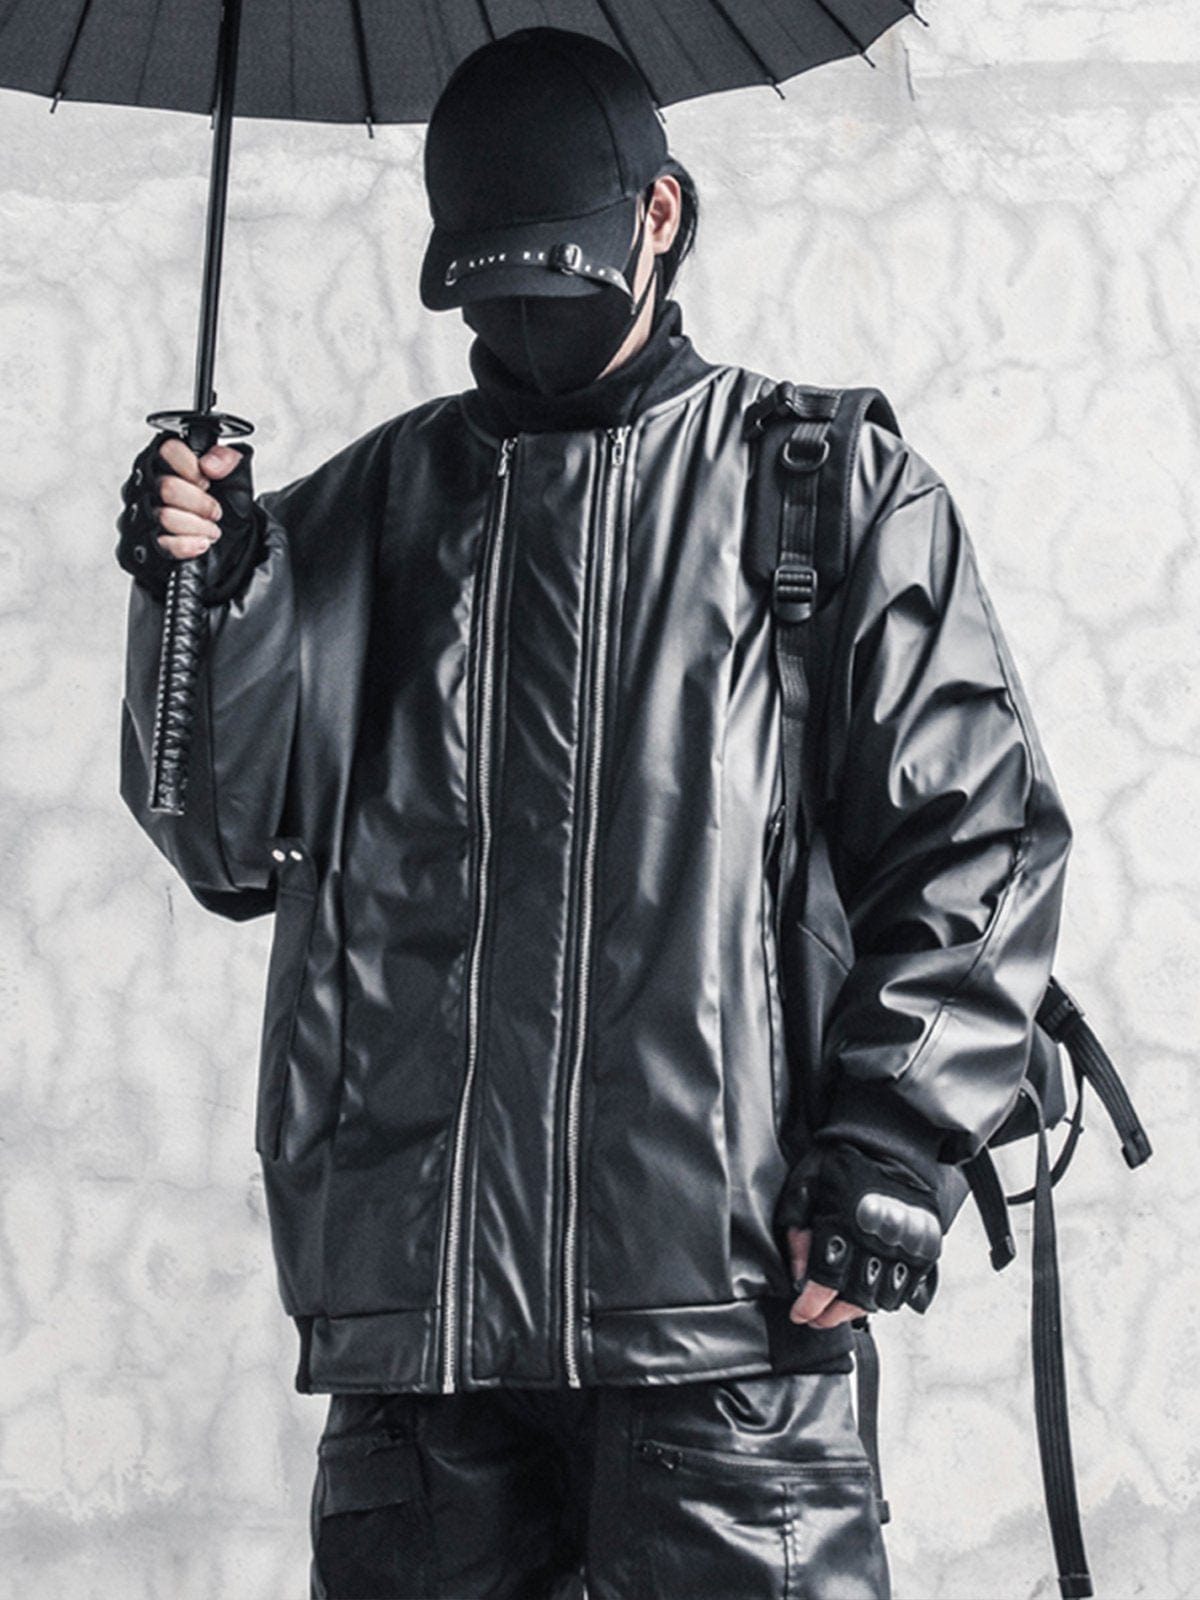 Double Zip Up Winter Coat Streetwear Brand Techwear Combat Tactical YUGEN THEORY